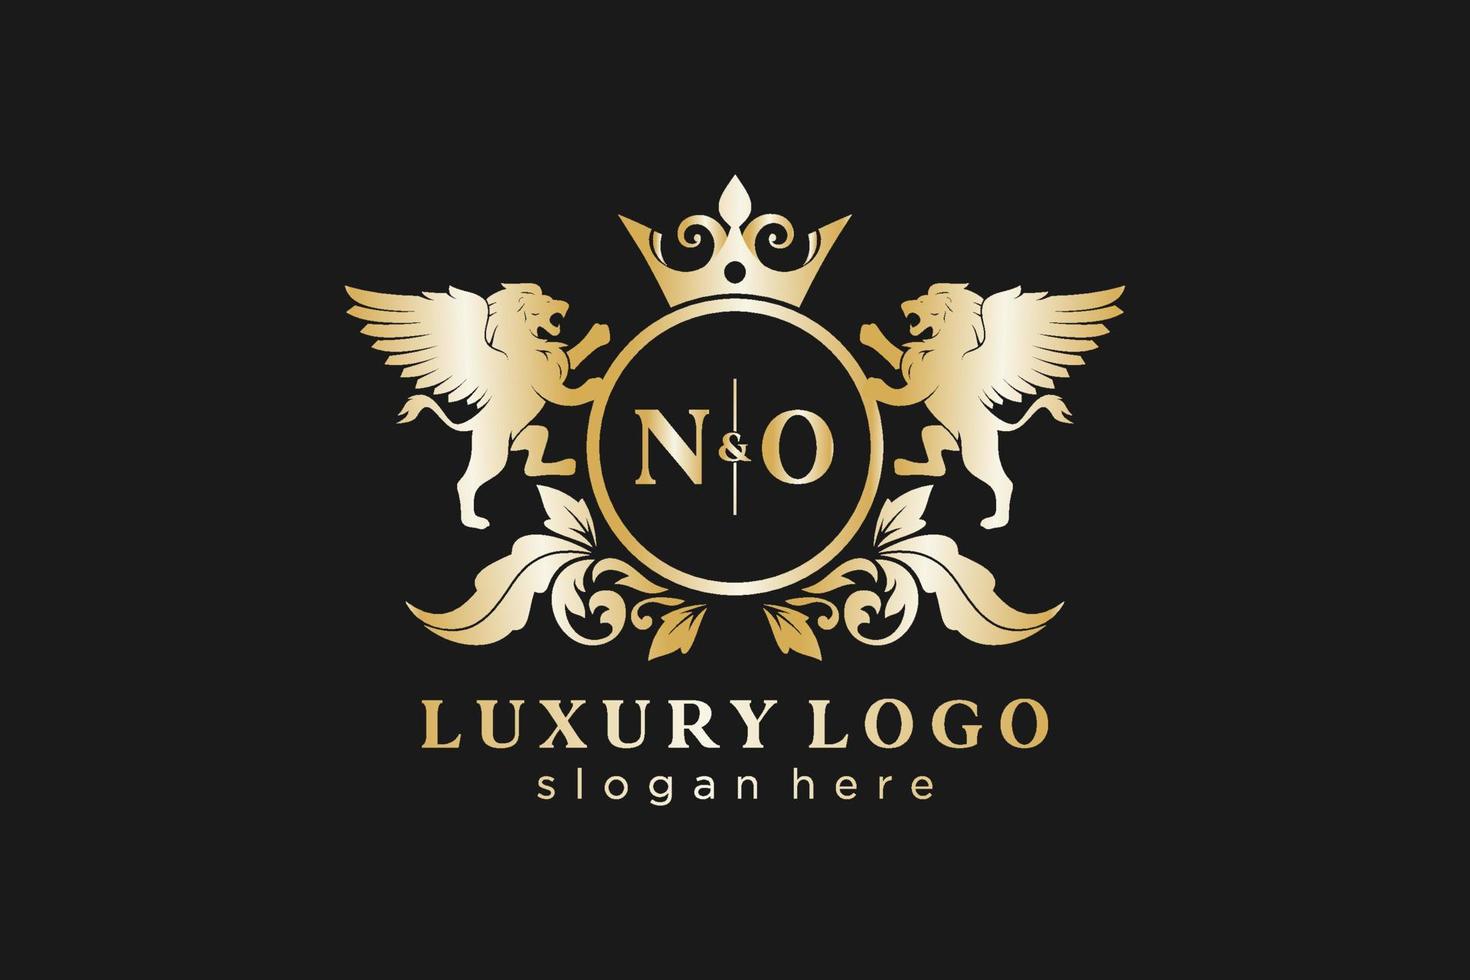 modèle de logo de luxe royal lion initial sans lettre dans l'art vectoriel pour le restaurant, la royauté, la boutique, le café, l'hôtel, l'héraldique, les bijoux, la mode et d'autres illustrations vectorielles.